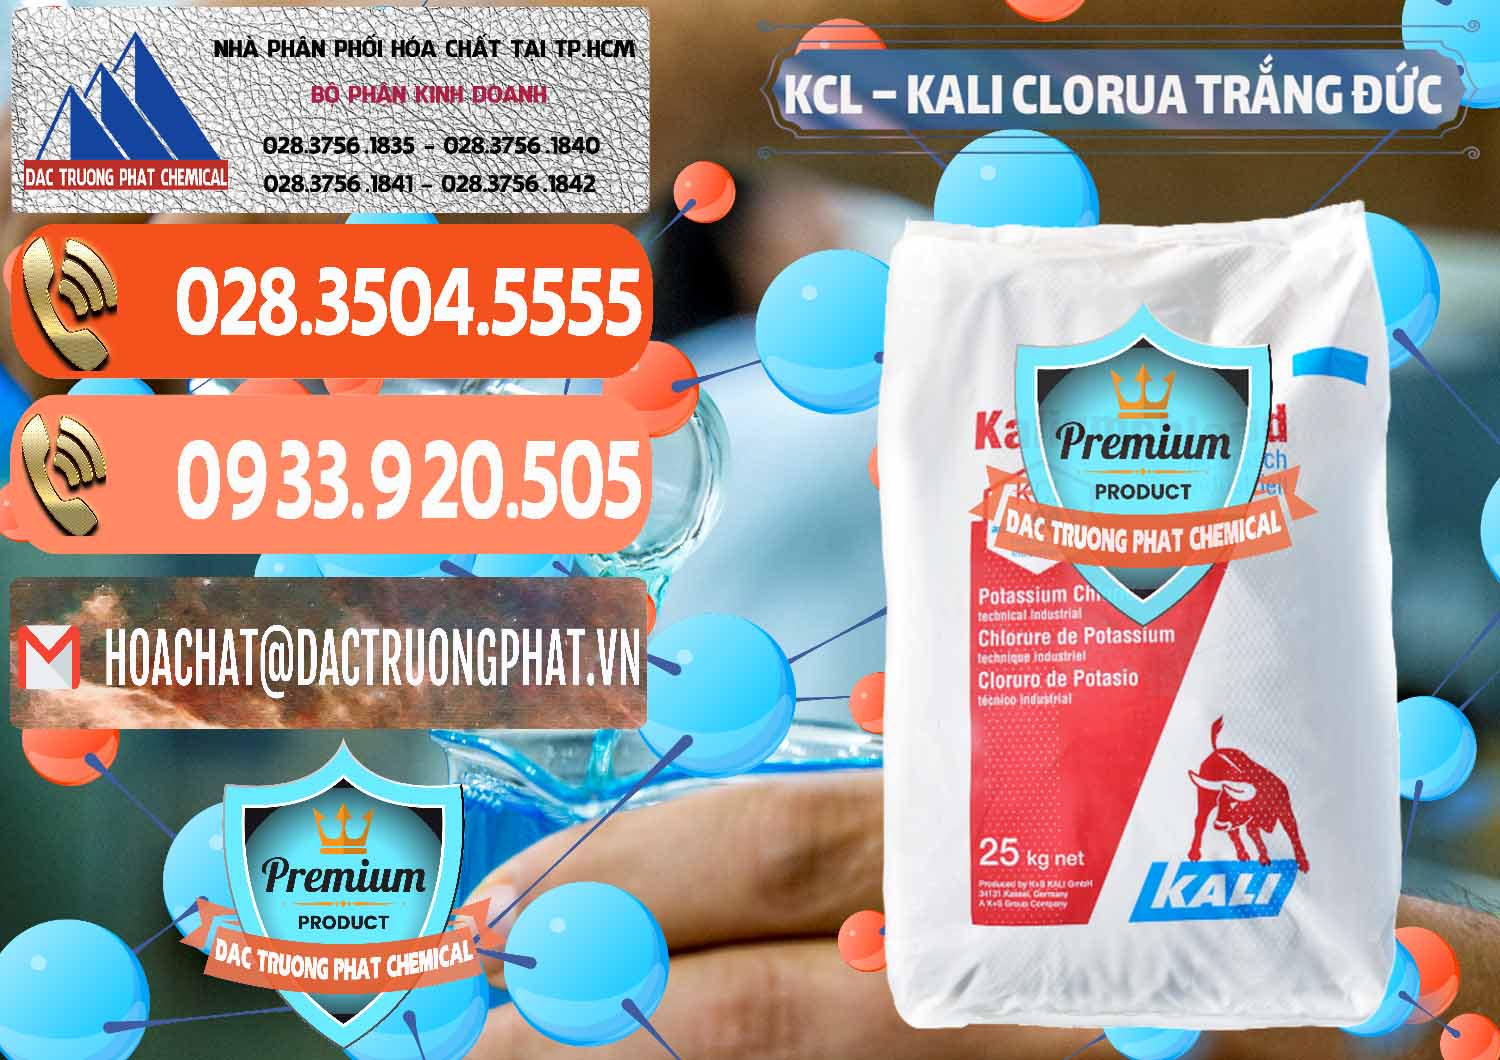 Chuyên bán và cung ứng KCL – Kali Clorua Trắng Đức Germany - 0086 - Cty nhập khẩu & phân phối hóa chất tại TP.HCM - hoachatmientay.com